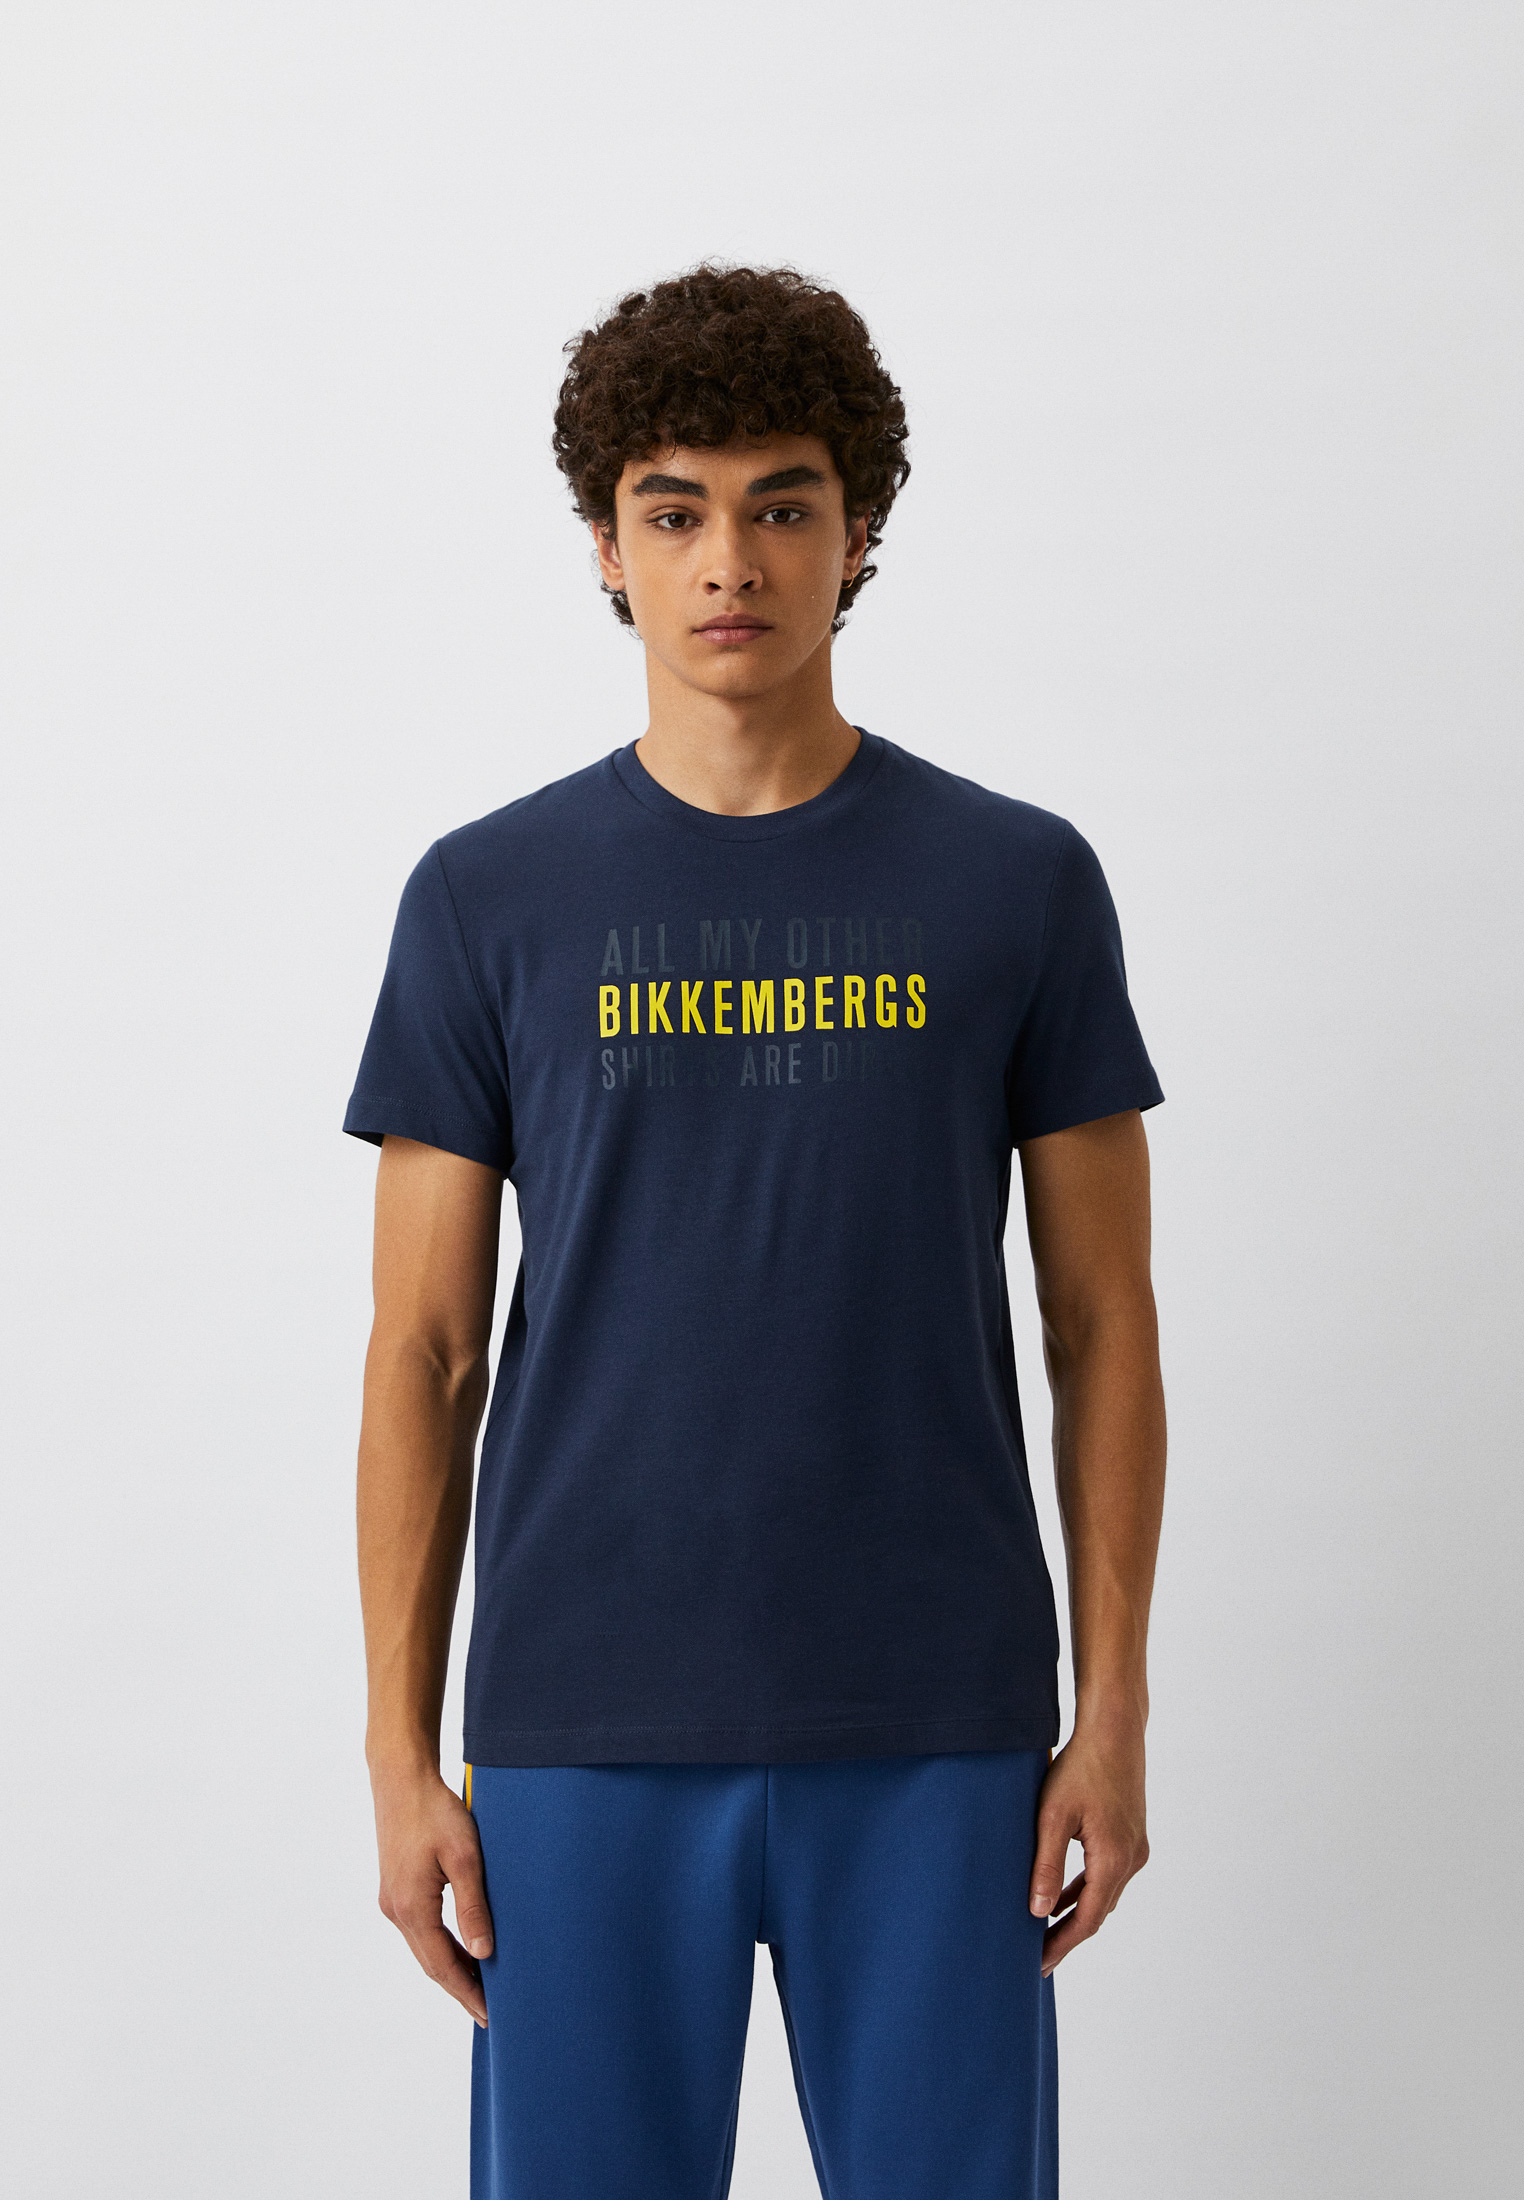 Мужская футболка Bikkembergs (Биккембергс) C 4 101 2C E 1811